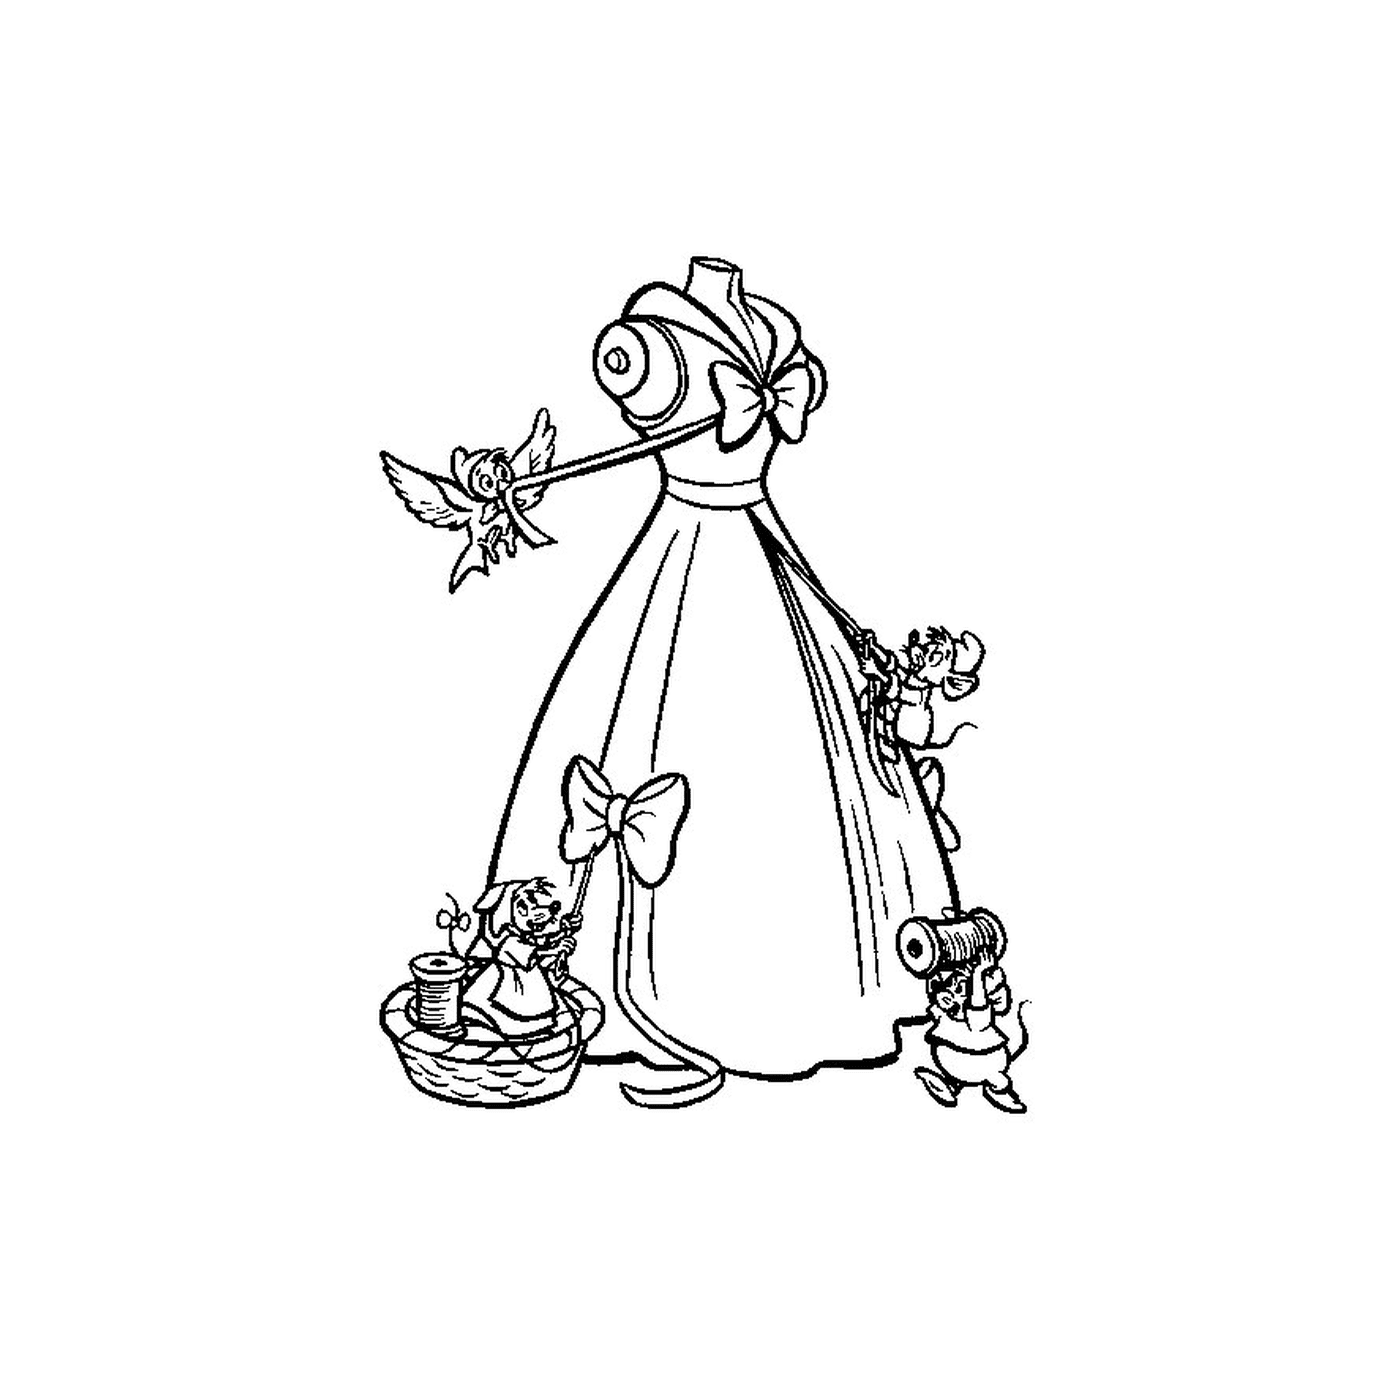  Mujer en vestido sosteniendo una varita mágica 